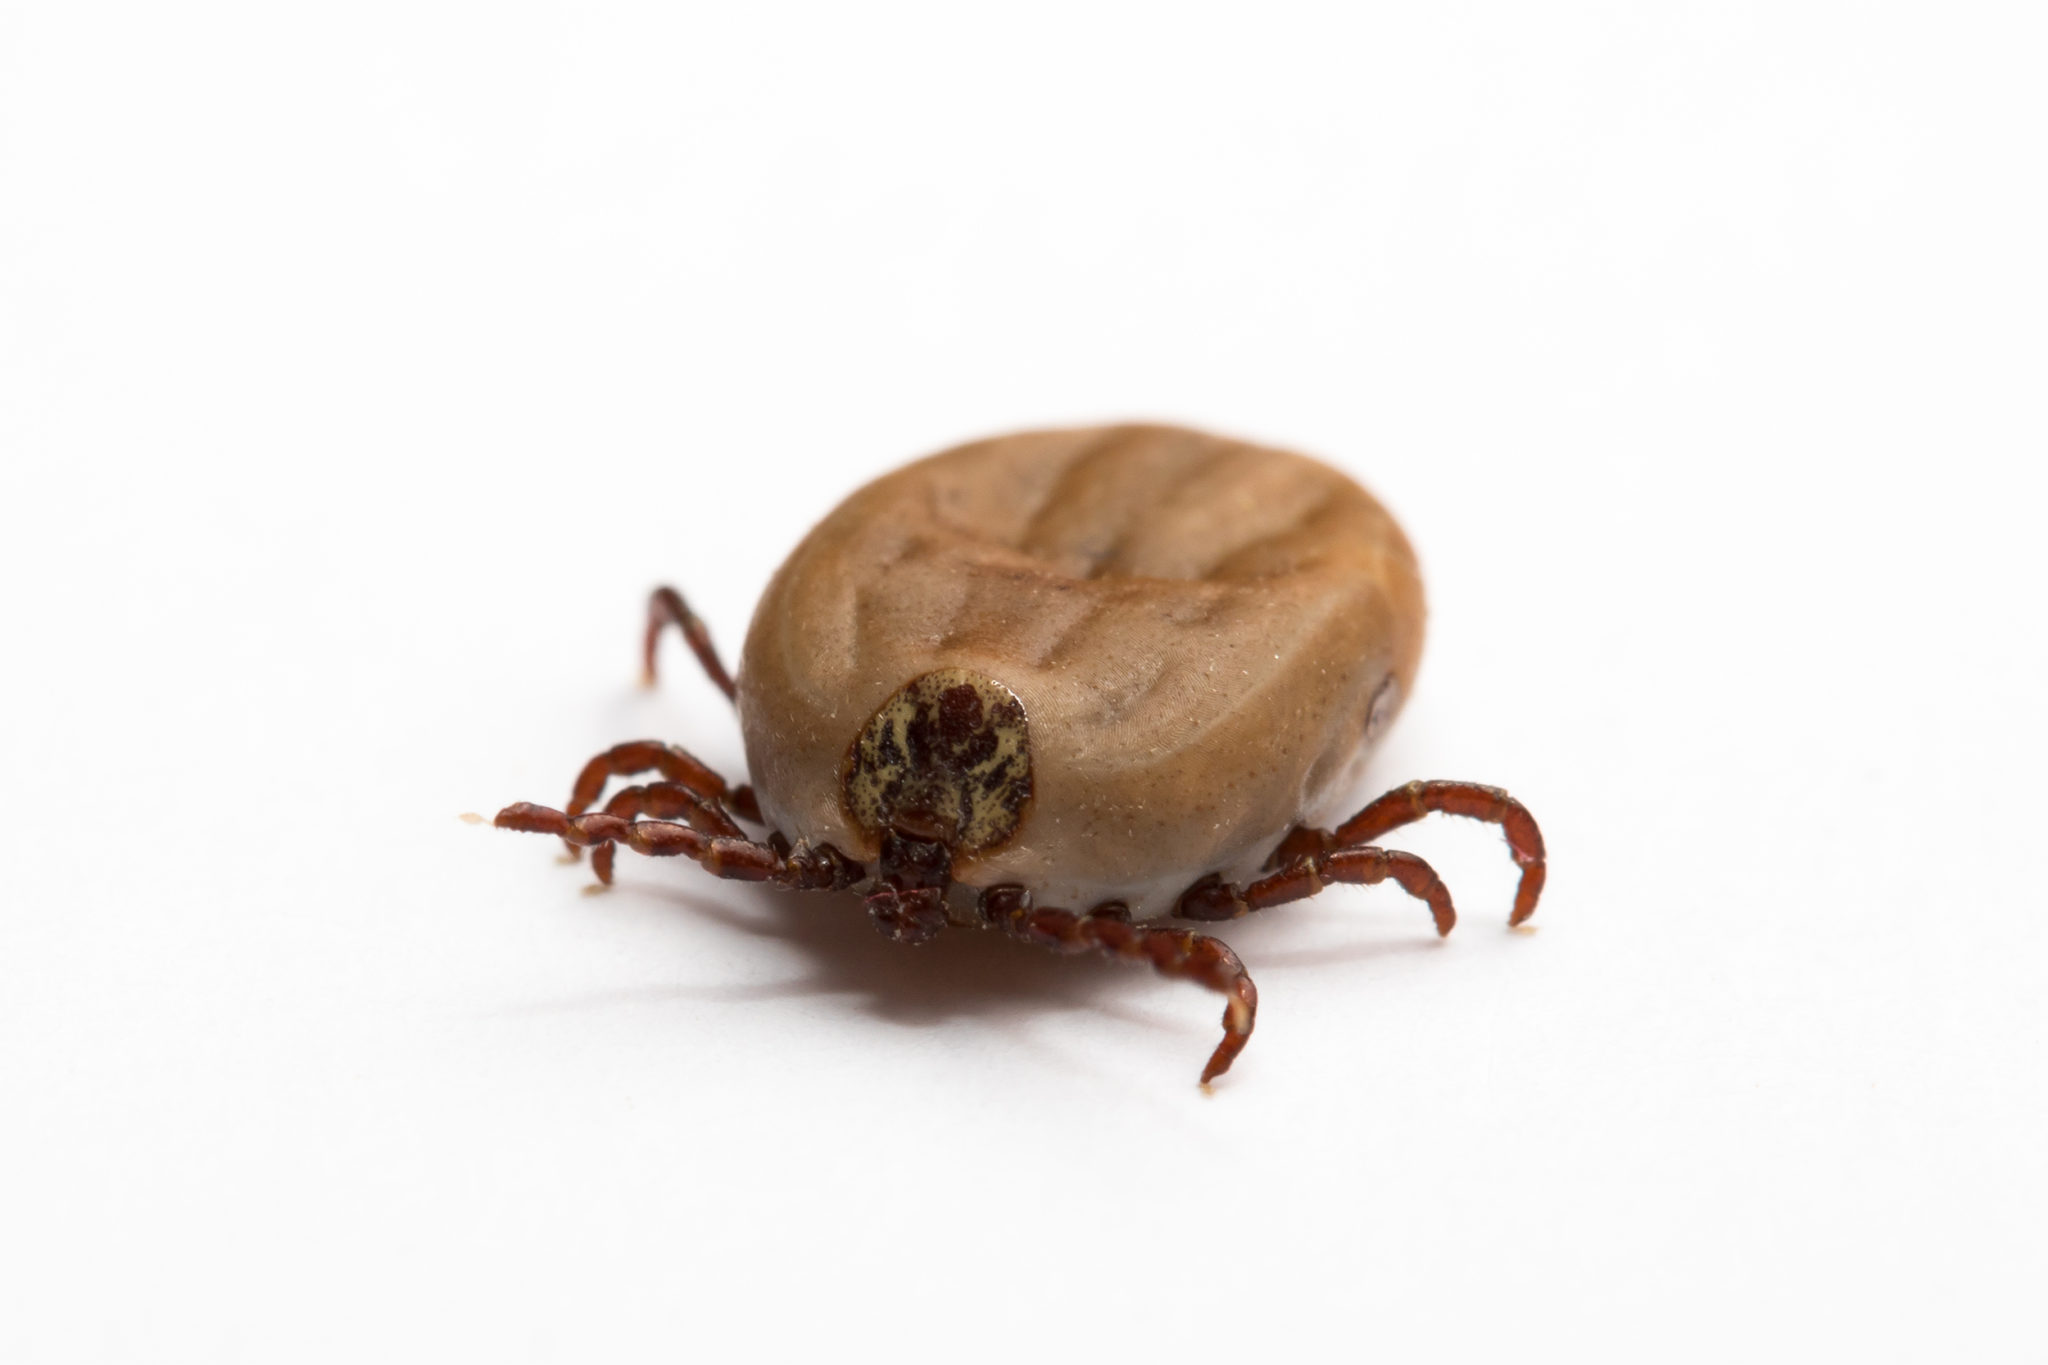 ticks pest control